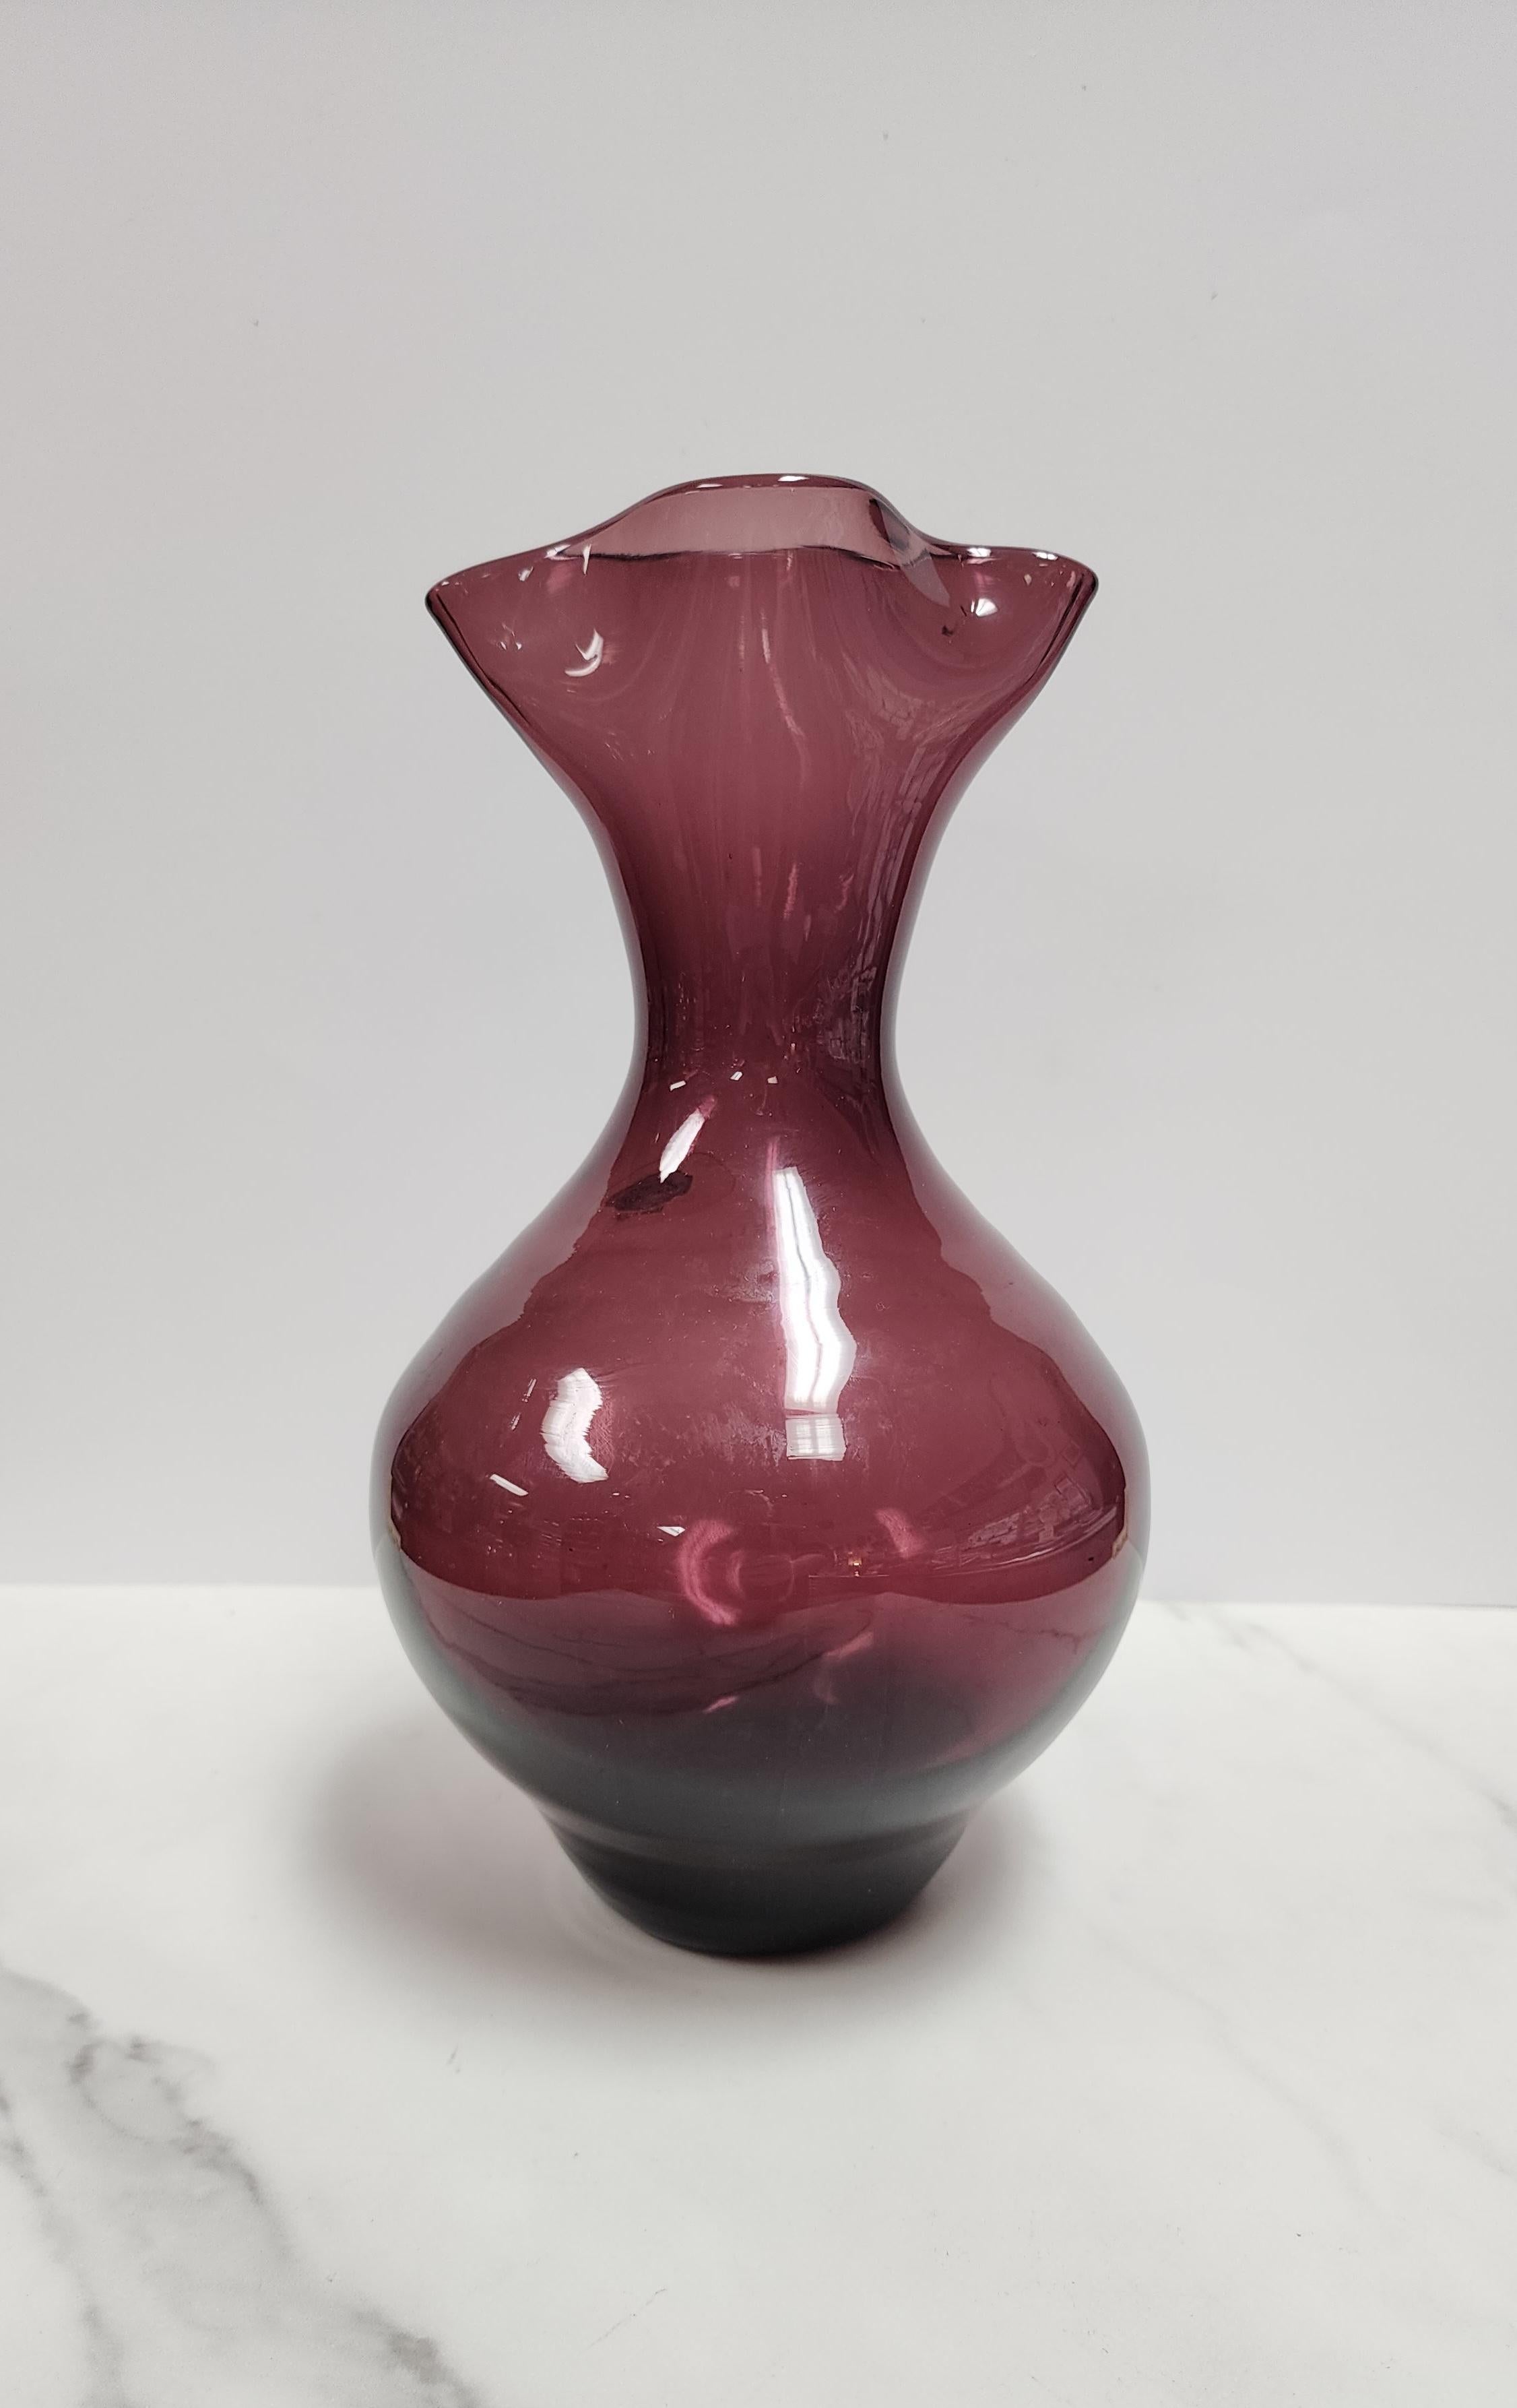 Ce vase en améthyste de Blenko est signé sur le fond et possède encore l'étiquette d'origine. Le fond est marqué Retro Blenko 2002 et est signé par l'artiste. Il a le bec pincé et est en excellent état. 
Ce vase est d'un violet magnifique qui sera